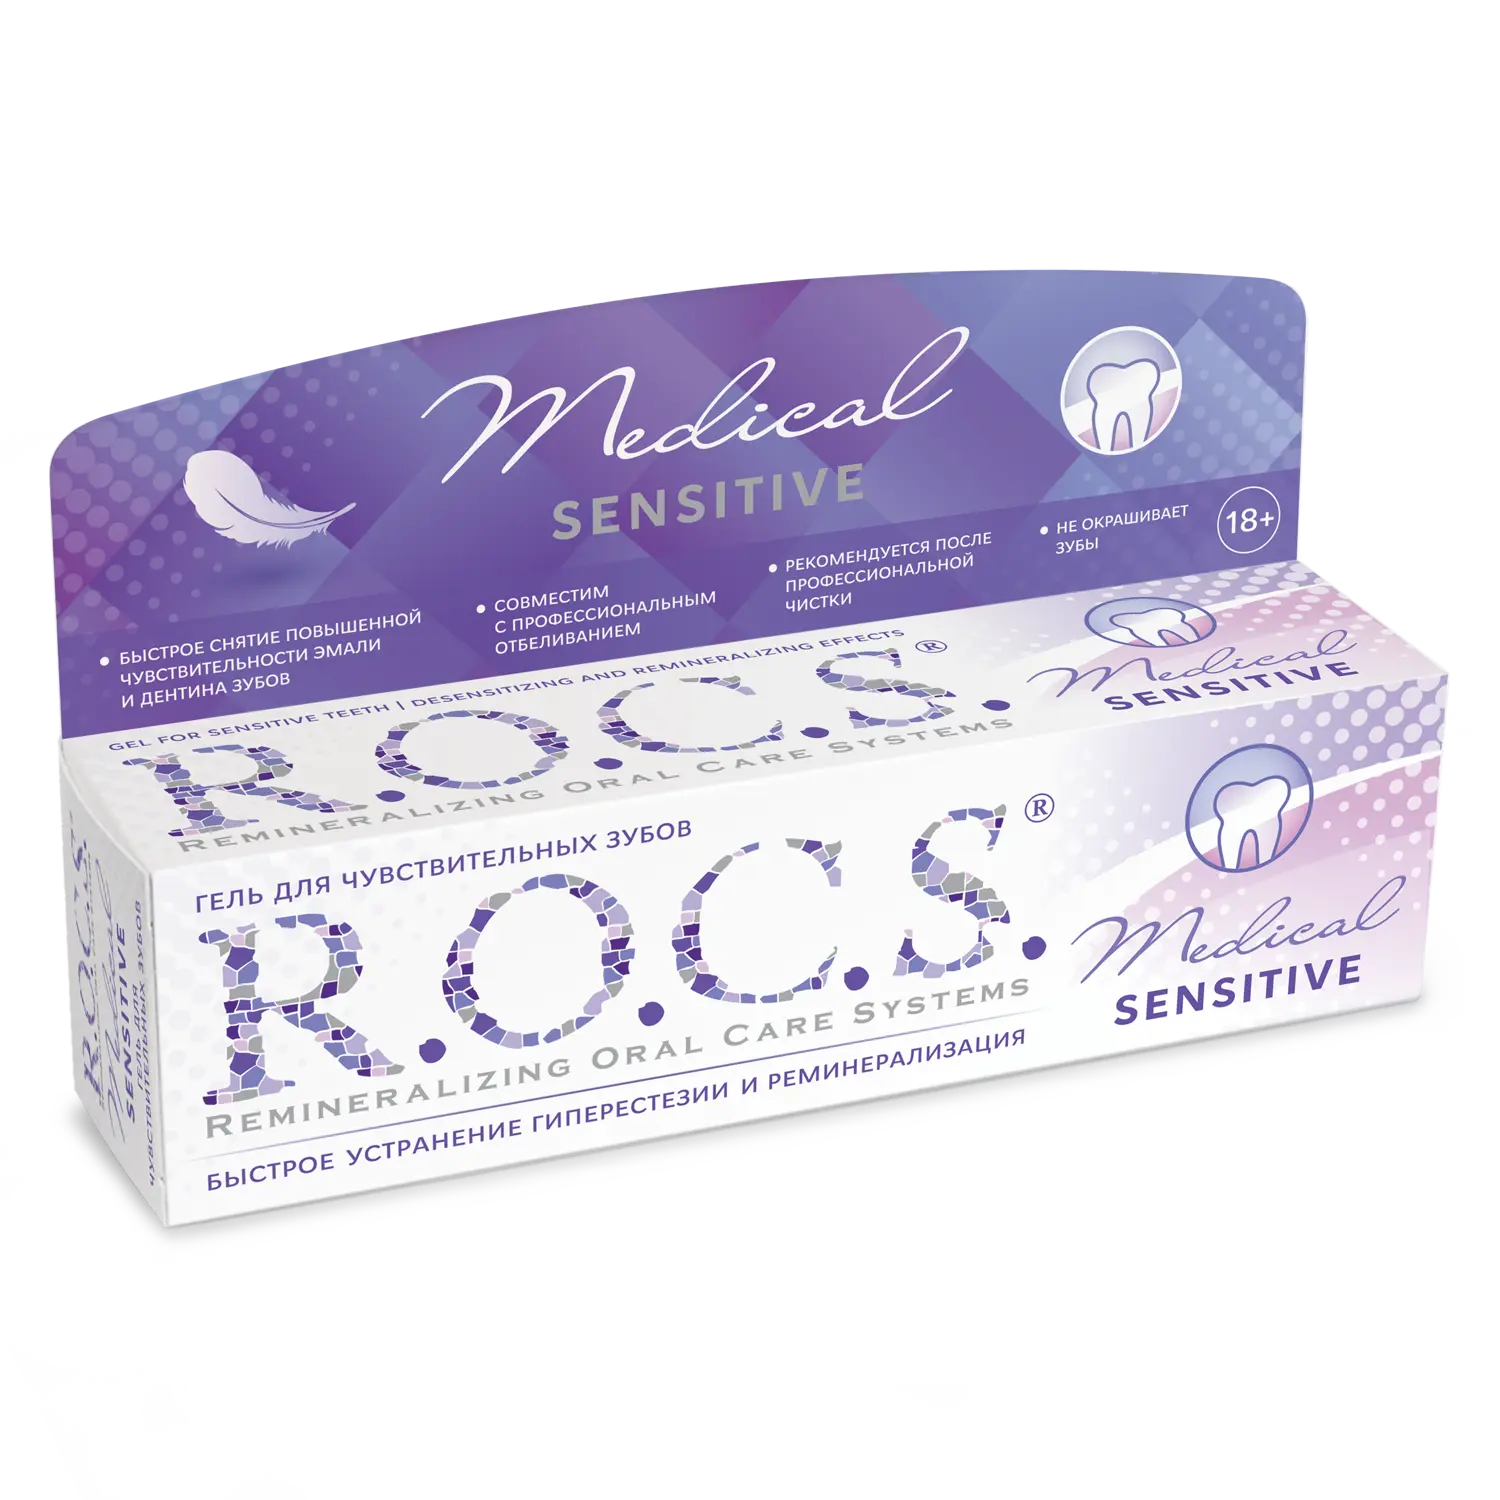 R.O.C.S (Рокс) гель Медикал Сенситив 45г. Гель для чувствительных зубов r.o.c.s. Medical sensitive, 45 г. Rocs Сенситив минерал. R.O.C.S. Медикал гель реминерализующий, 45 г. R o c s minerals